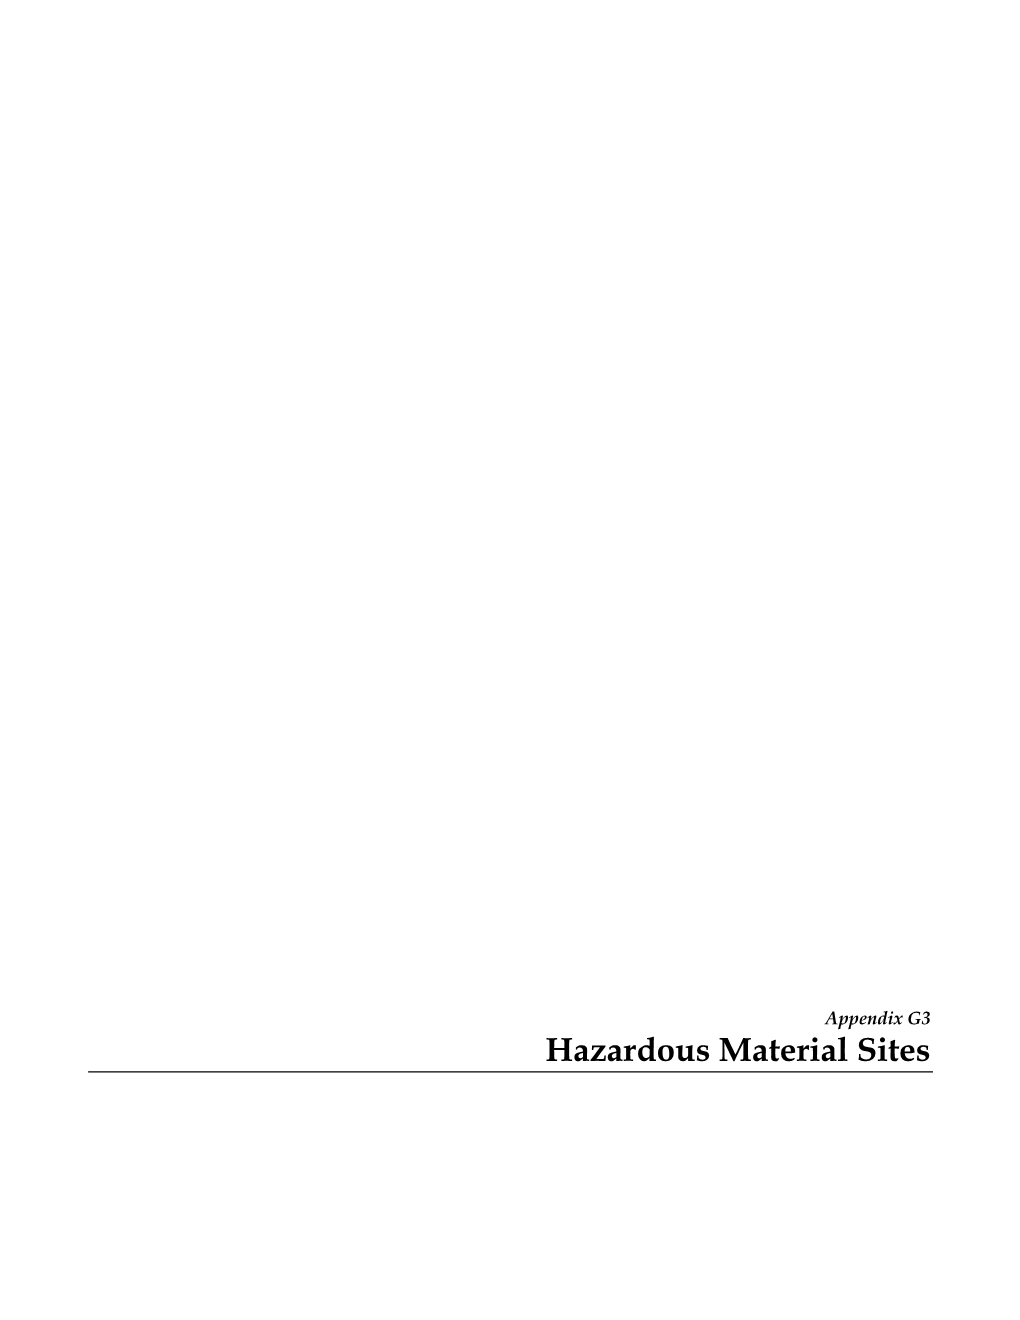 Hazardous Material Sites